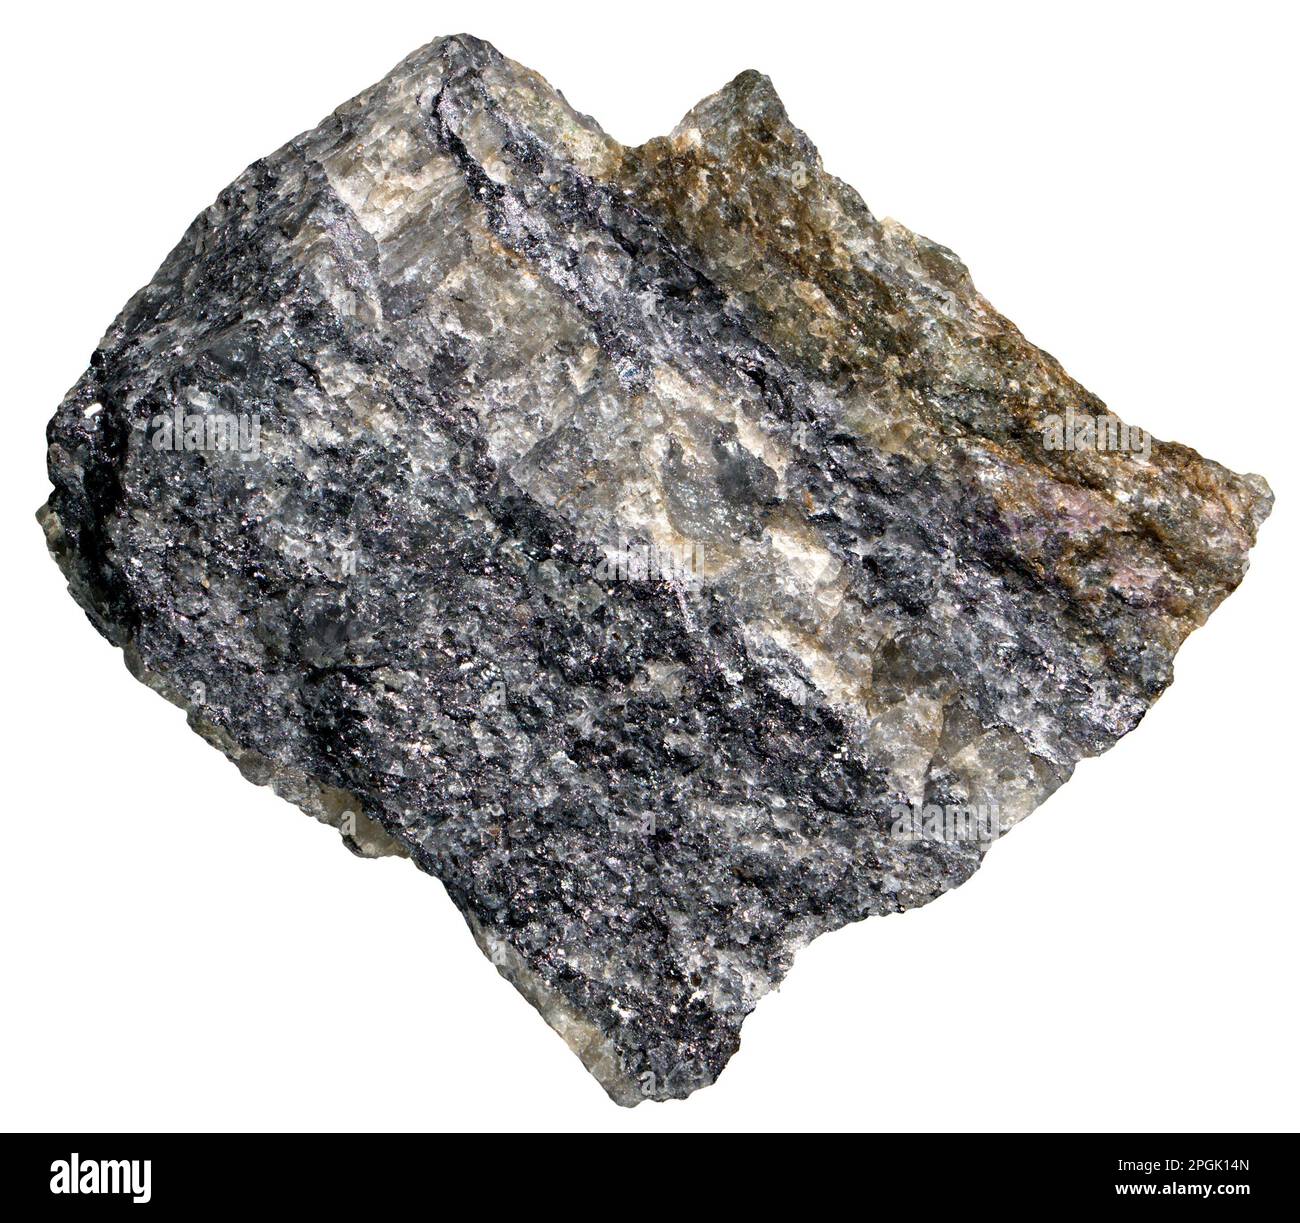 Willemite (Zinksilikatmineralien [Zn2SiO4] – Nebenerz von Zink) und Calcite aus Garpenberg, Schweden Stockfoto